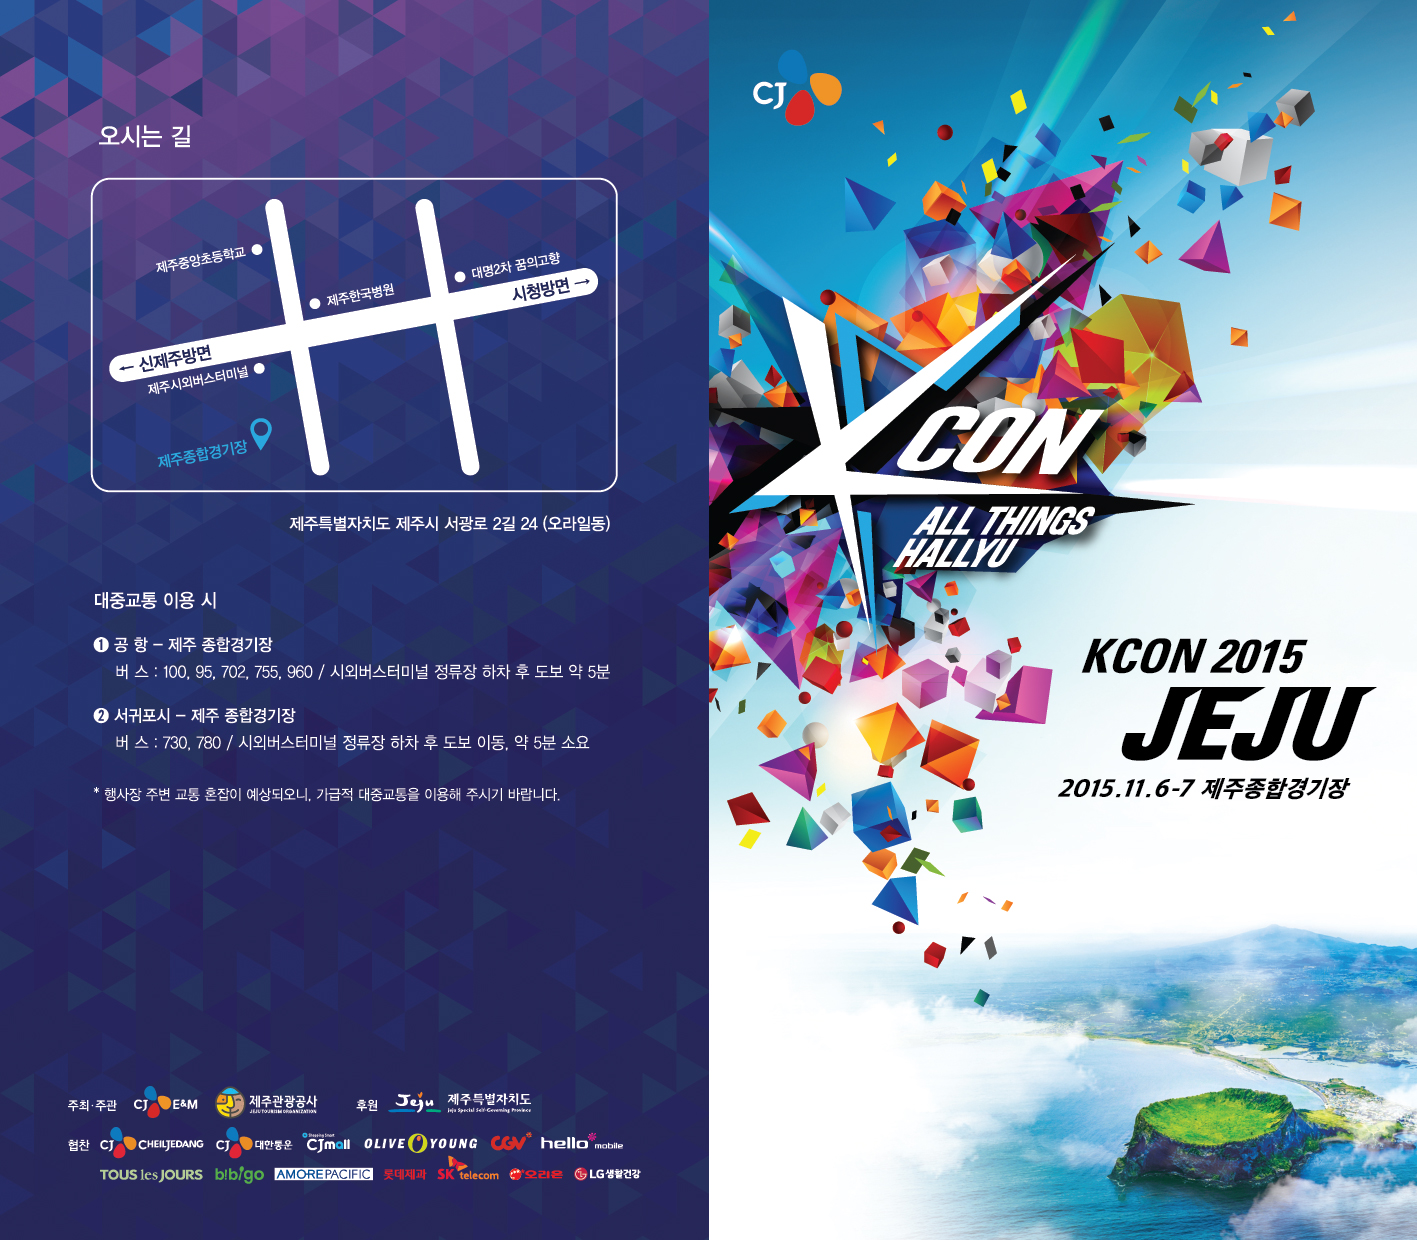 [KCON 2015 JEJU] 제주에서 개최되는 메가이벤트 리플렛 표지